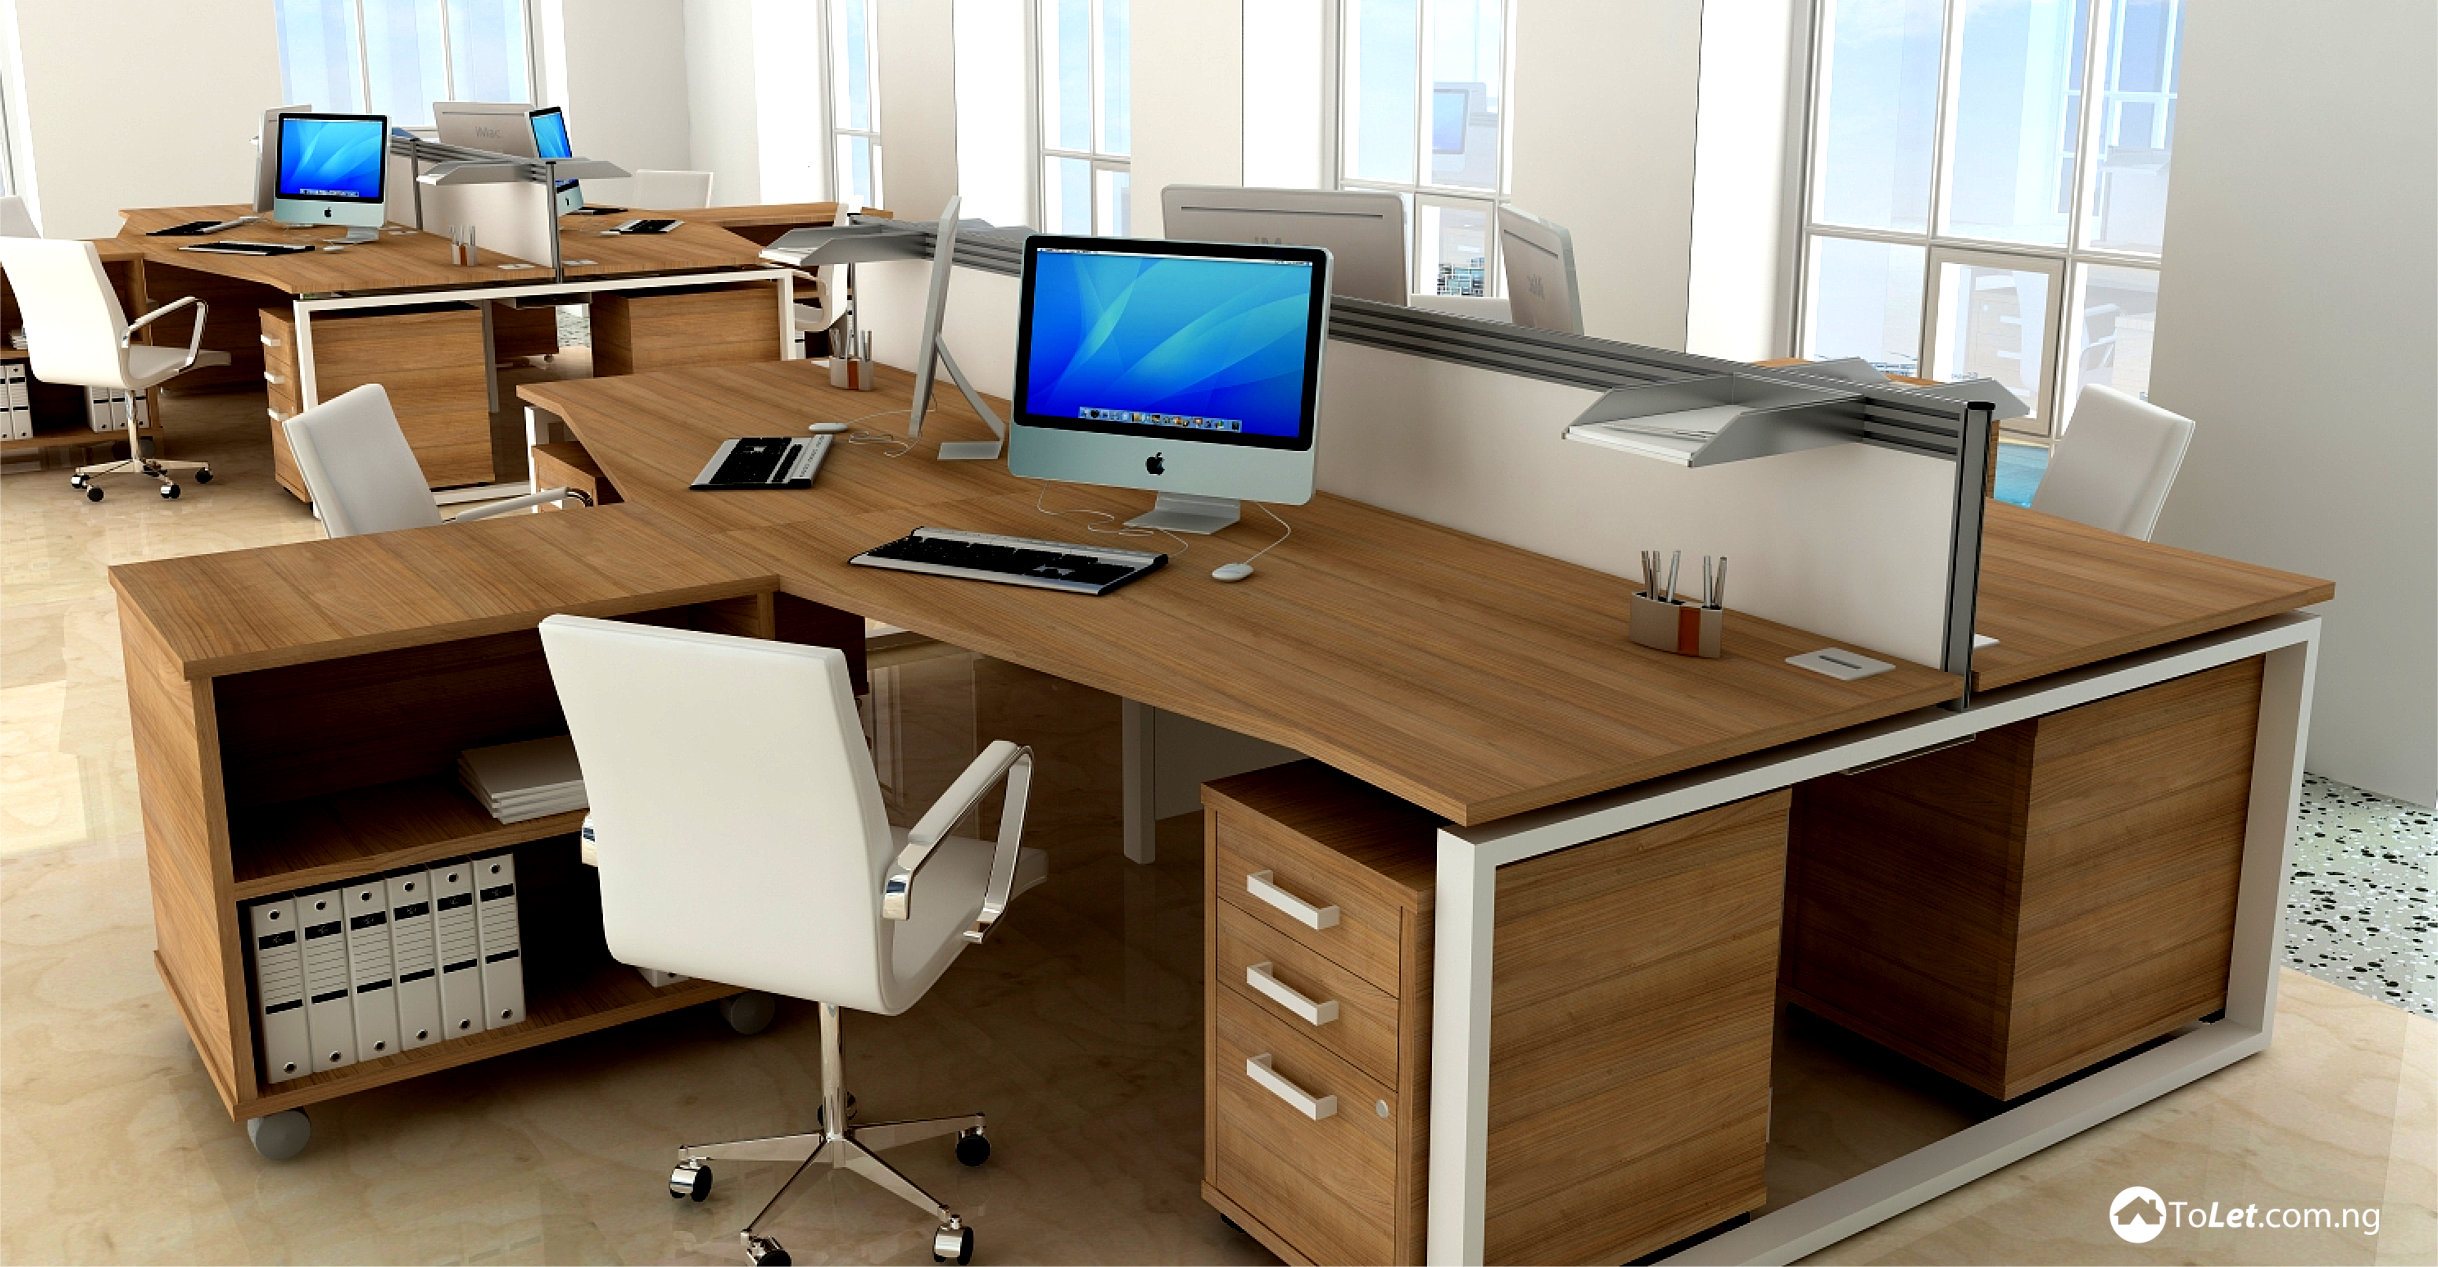 5 Types Of Office Desks You Should Have - PropertyPro Insider